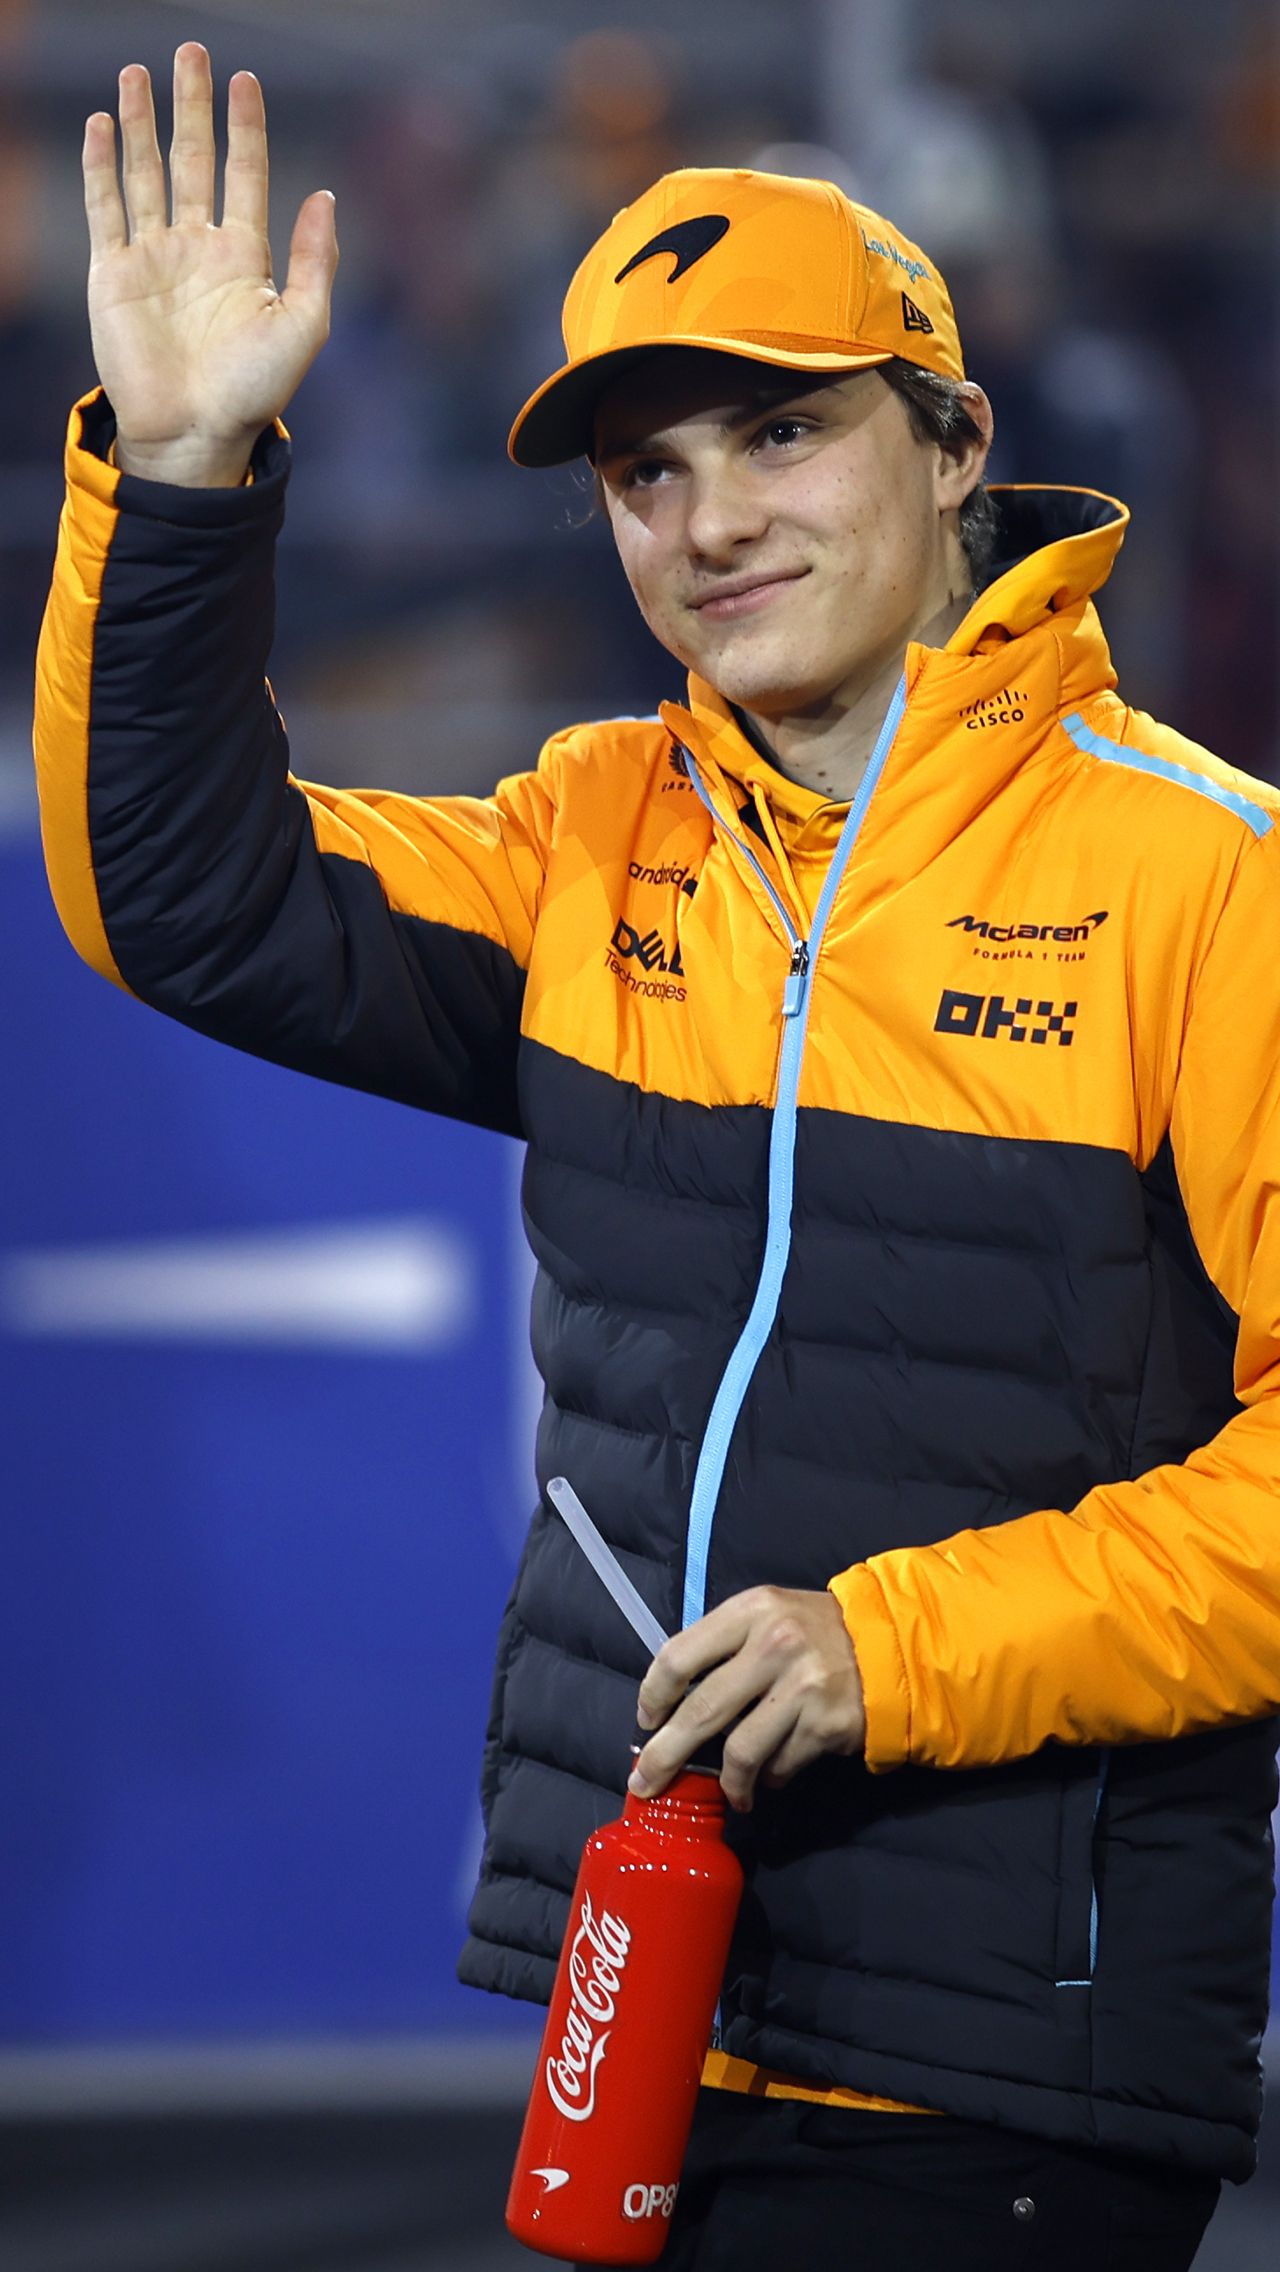 Оскар Пиастри после успешного дебютного сезона в составе «Макларена» получил продление контракта и теперь должен выступать за «оранжевых» как минимум до конца 2026 года.